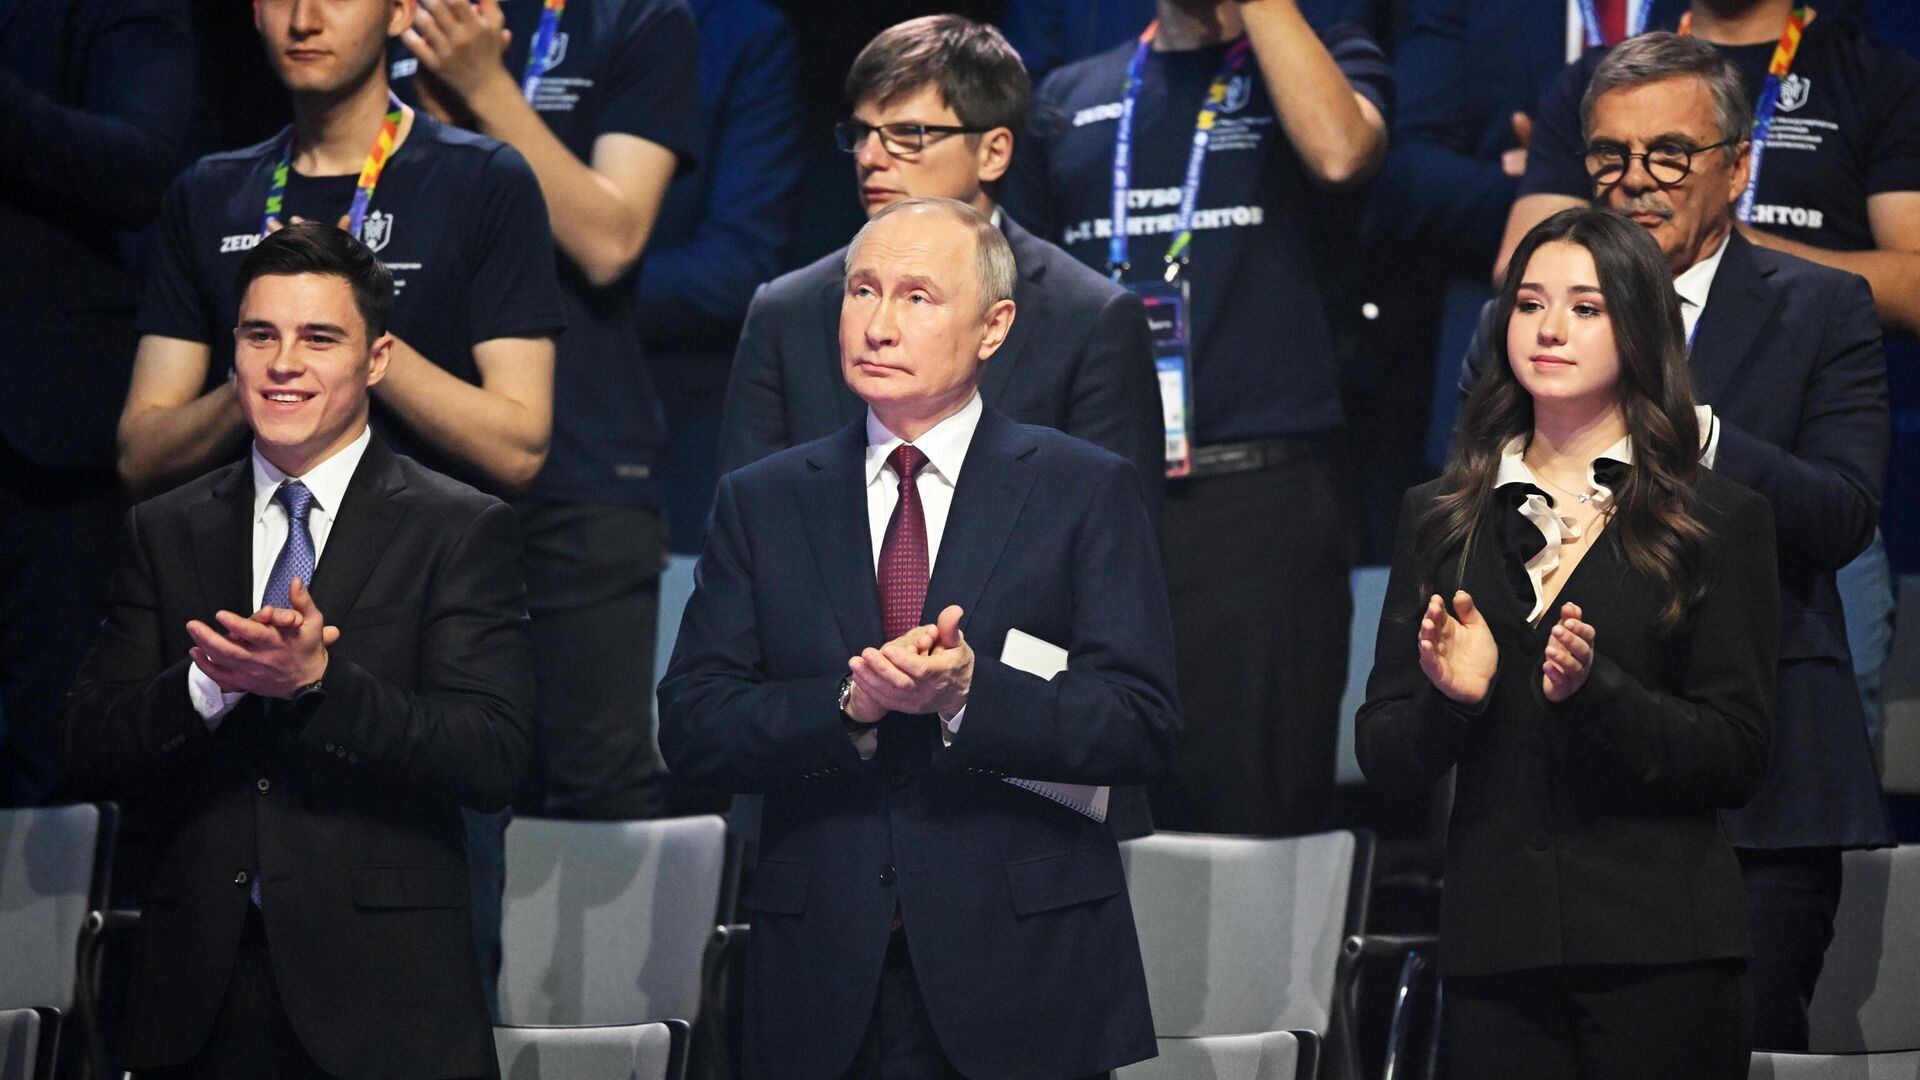 "Її використали": МОК викрив Путіна у підставі 17-річної фігуристки